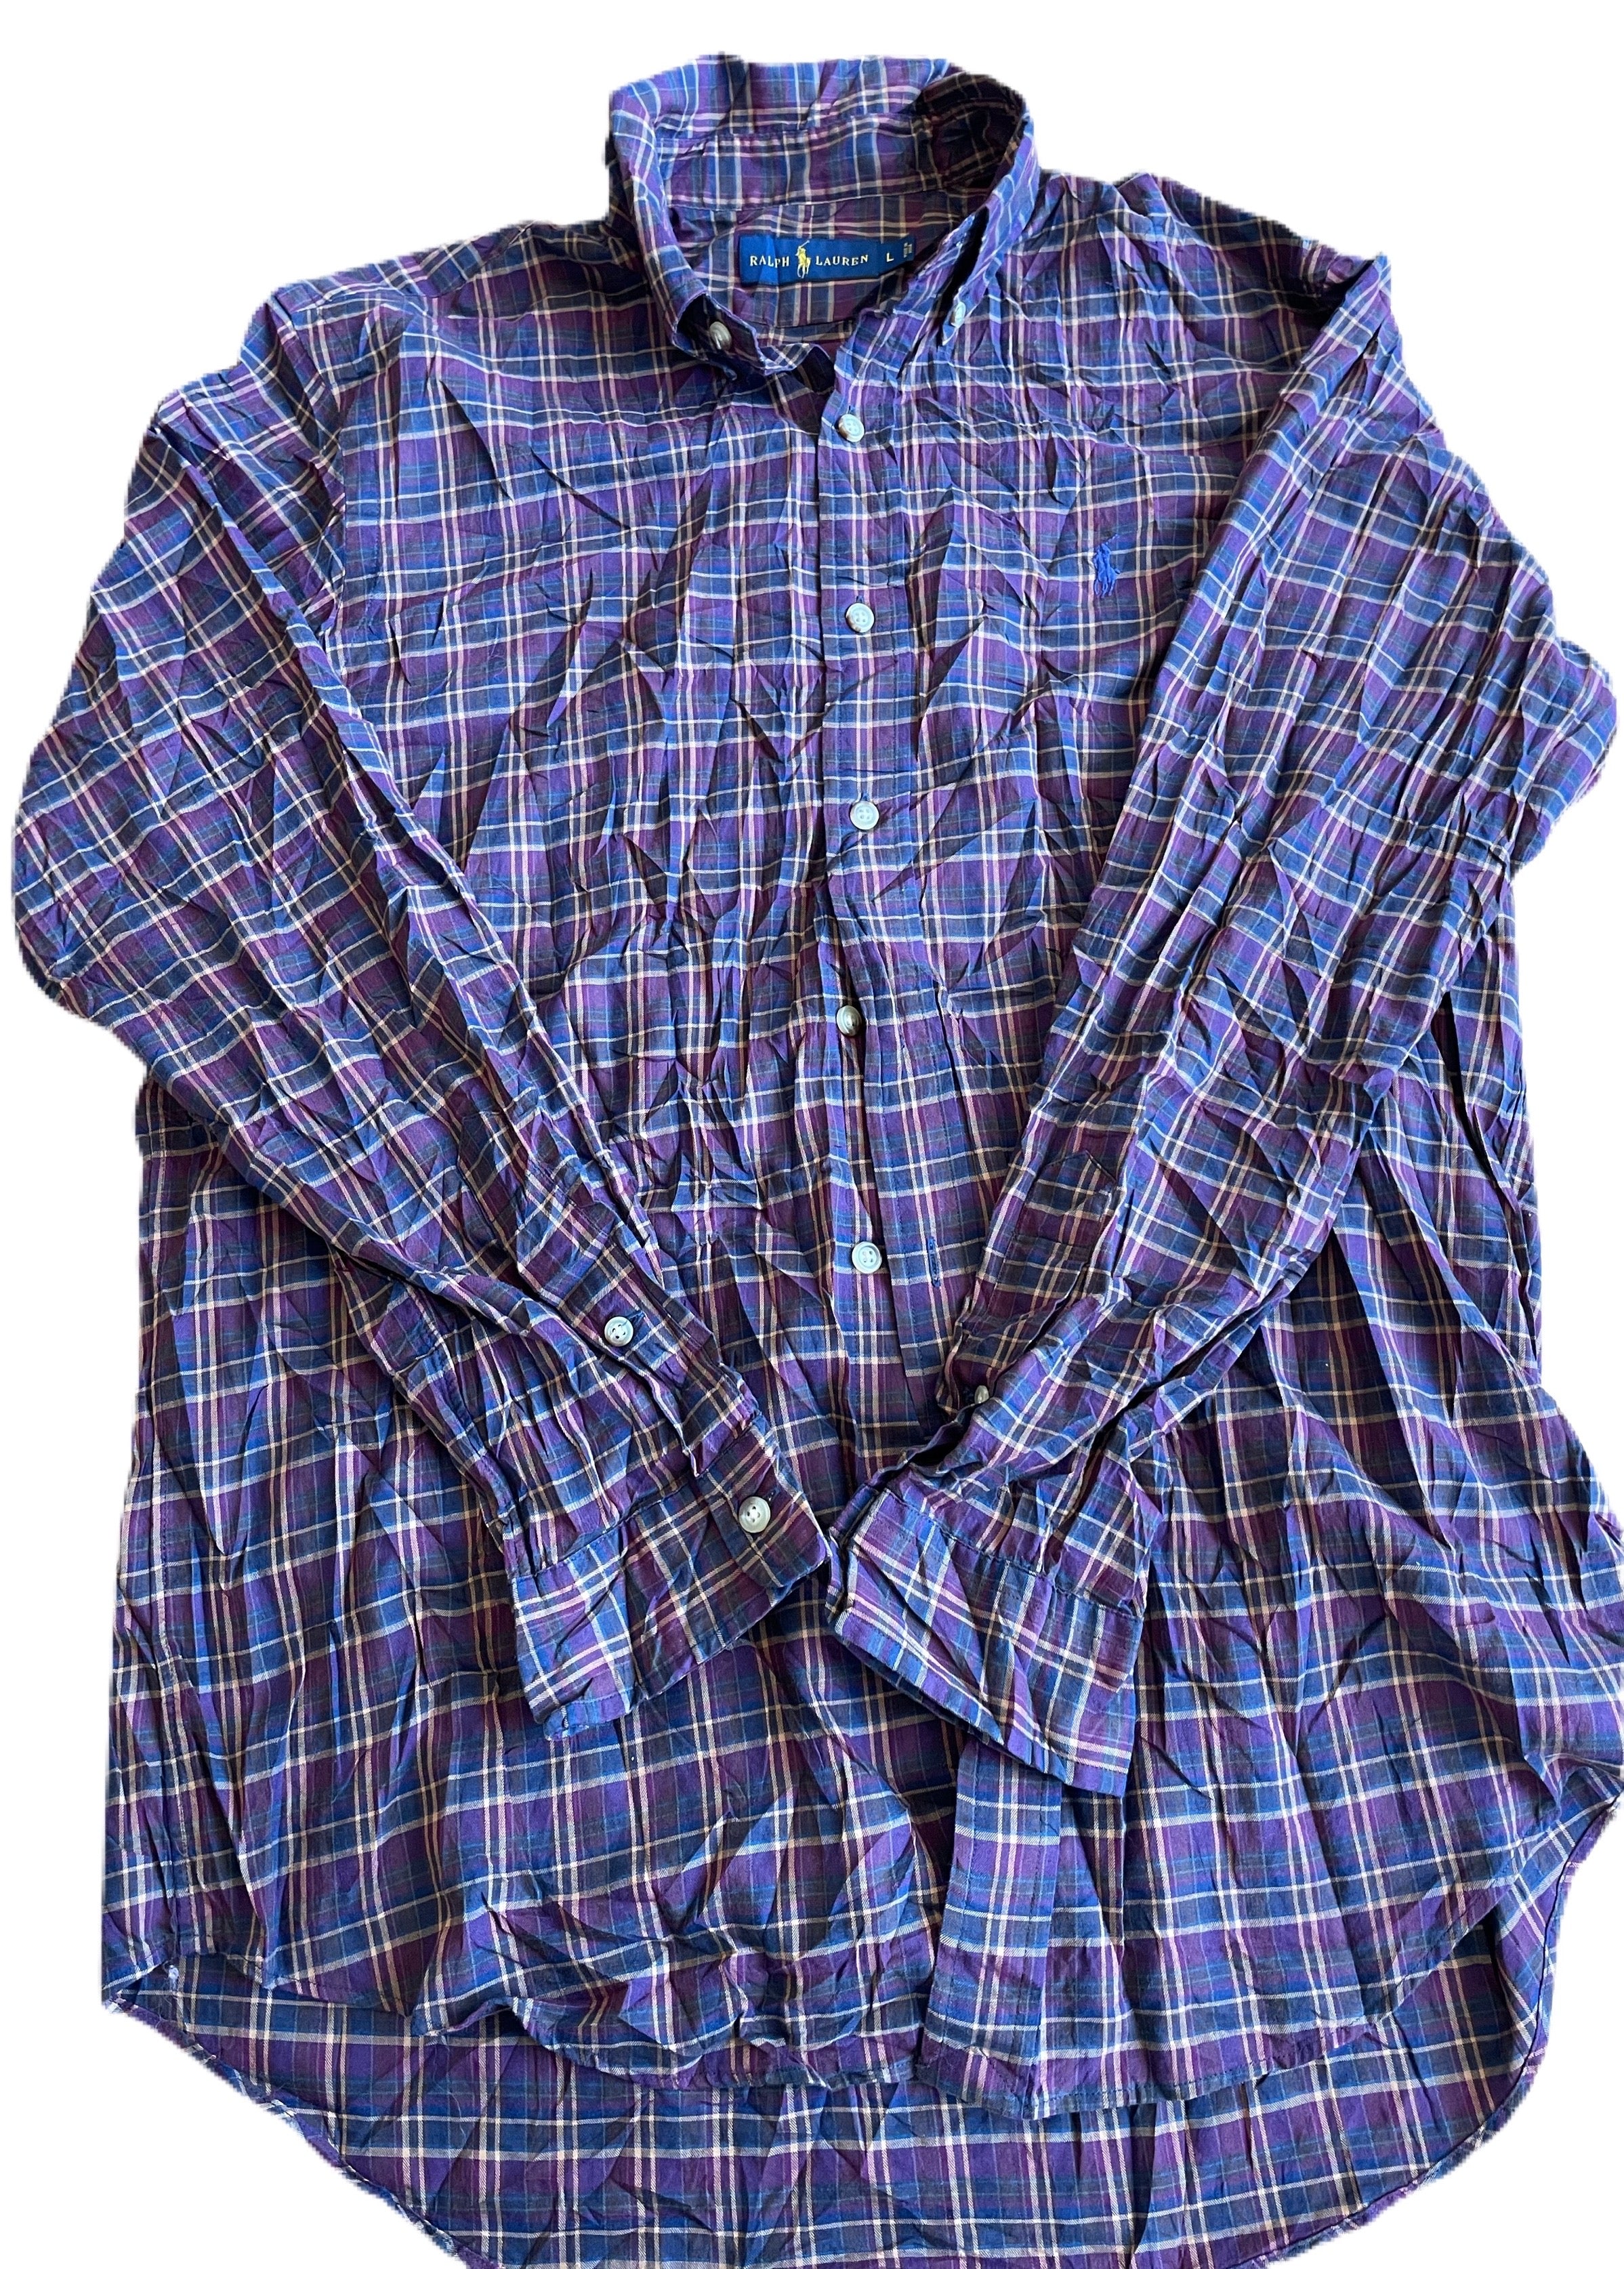 Ralph Lauren Cotton shirts